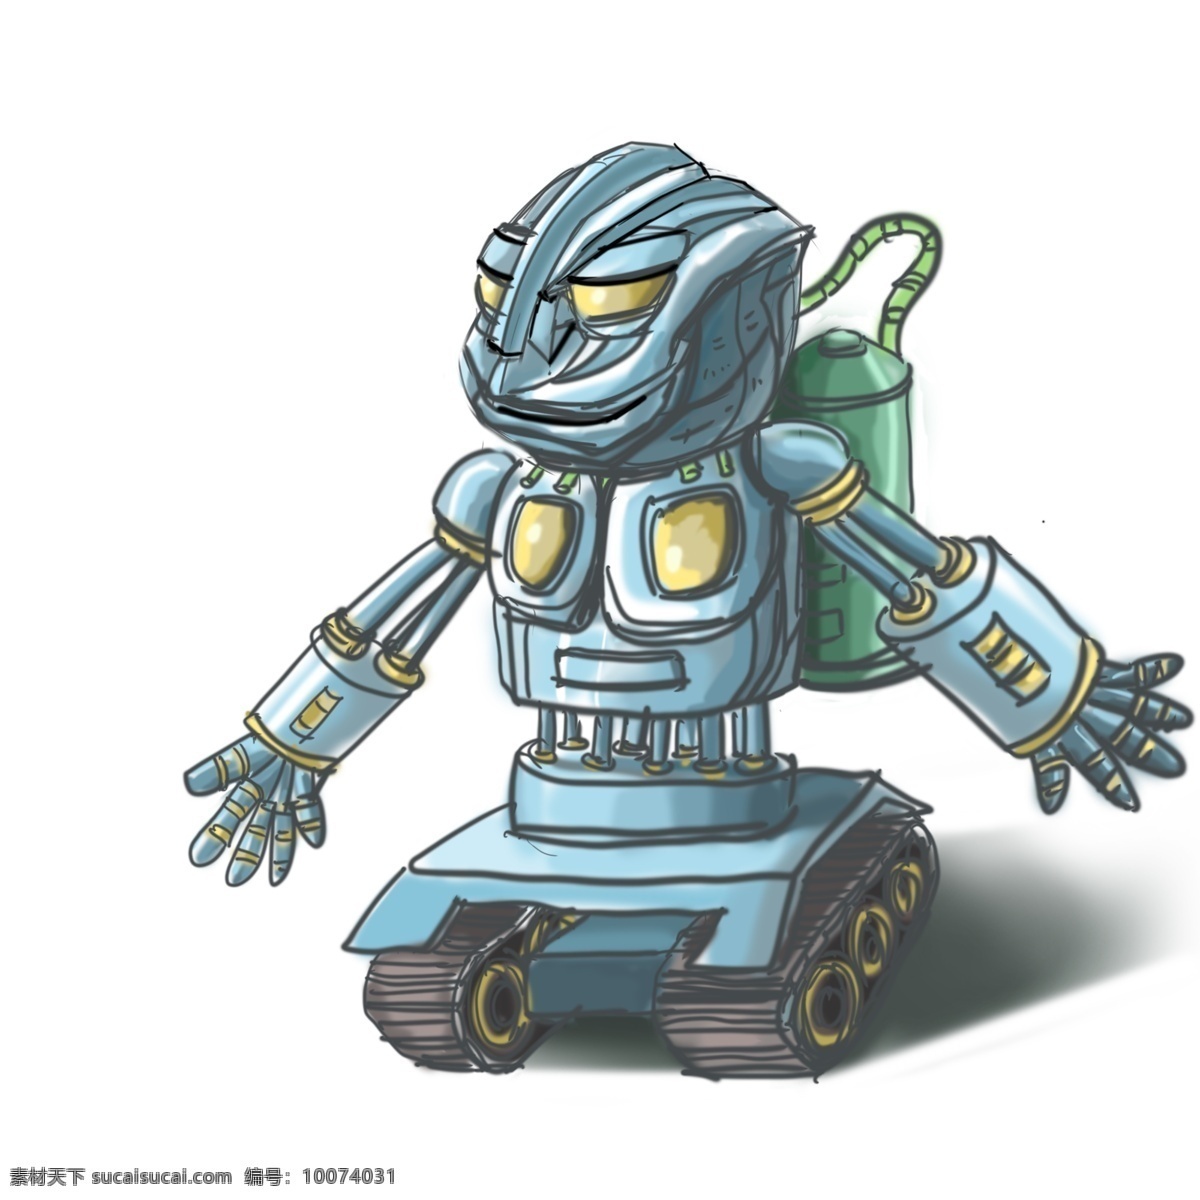 交通工具 主题 机器人 小车 漫画 风格 手绘 可爱机器人 能源罐 履带小车 未来科技 机械化 自动化 漫画风格 卡通手绘